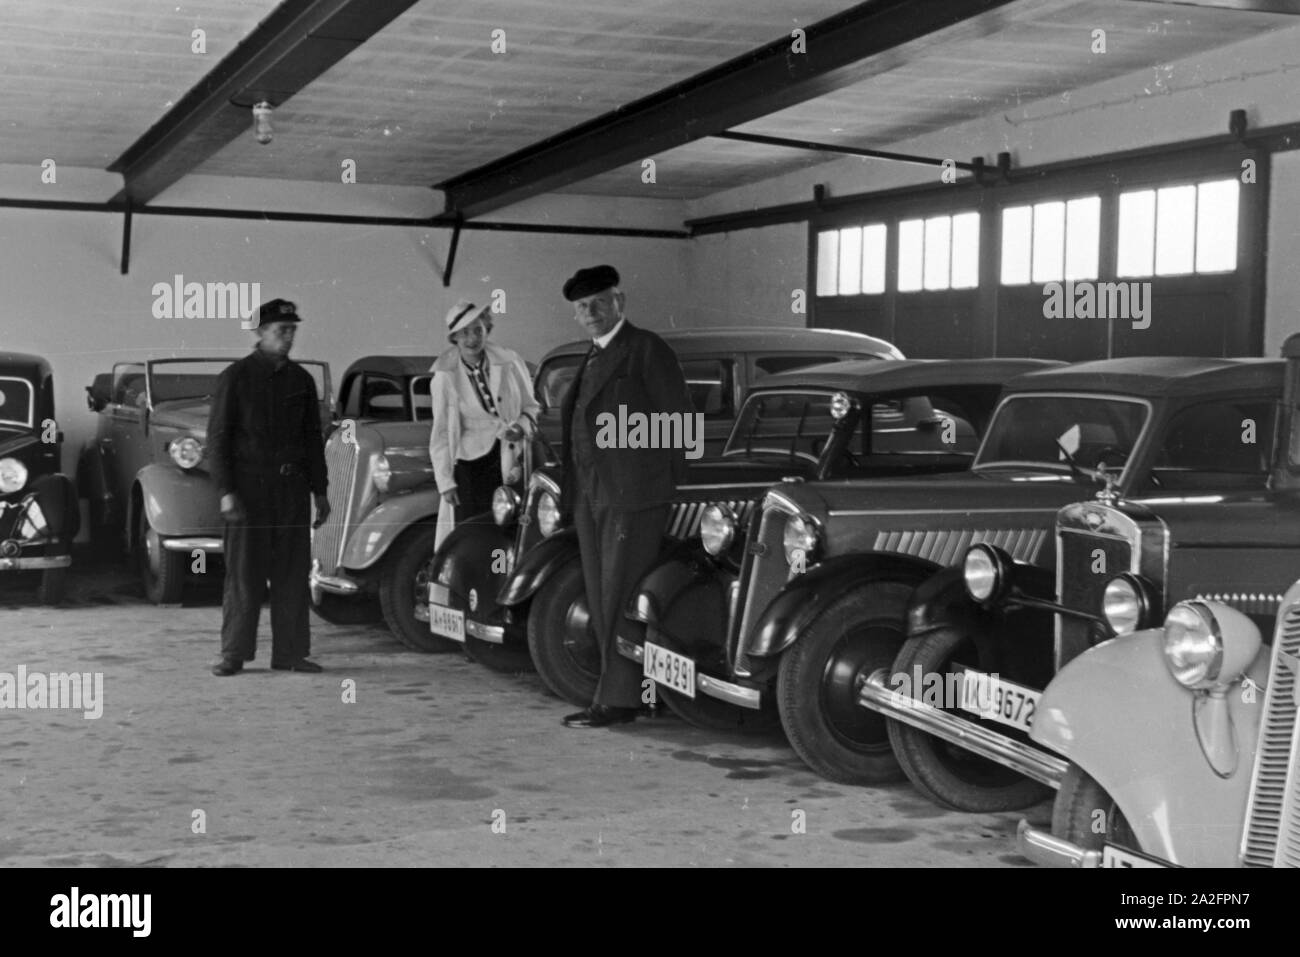 Eine Frau gibt ihren Audi in einer der Garagen am Meer in Norddeich ab, Deutschland 1930er Jahre. Una donna portando la sua Audi auto in uno dei garage di Norddeich, Germania 1930s. Foto Stock